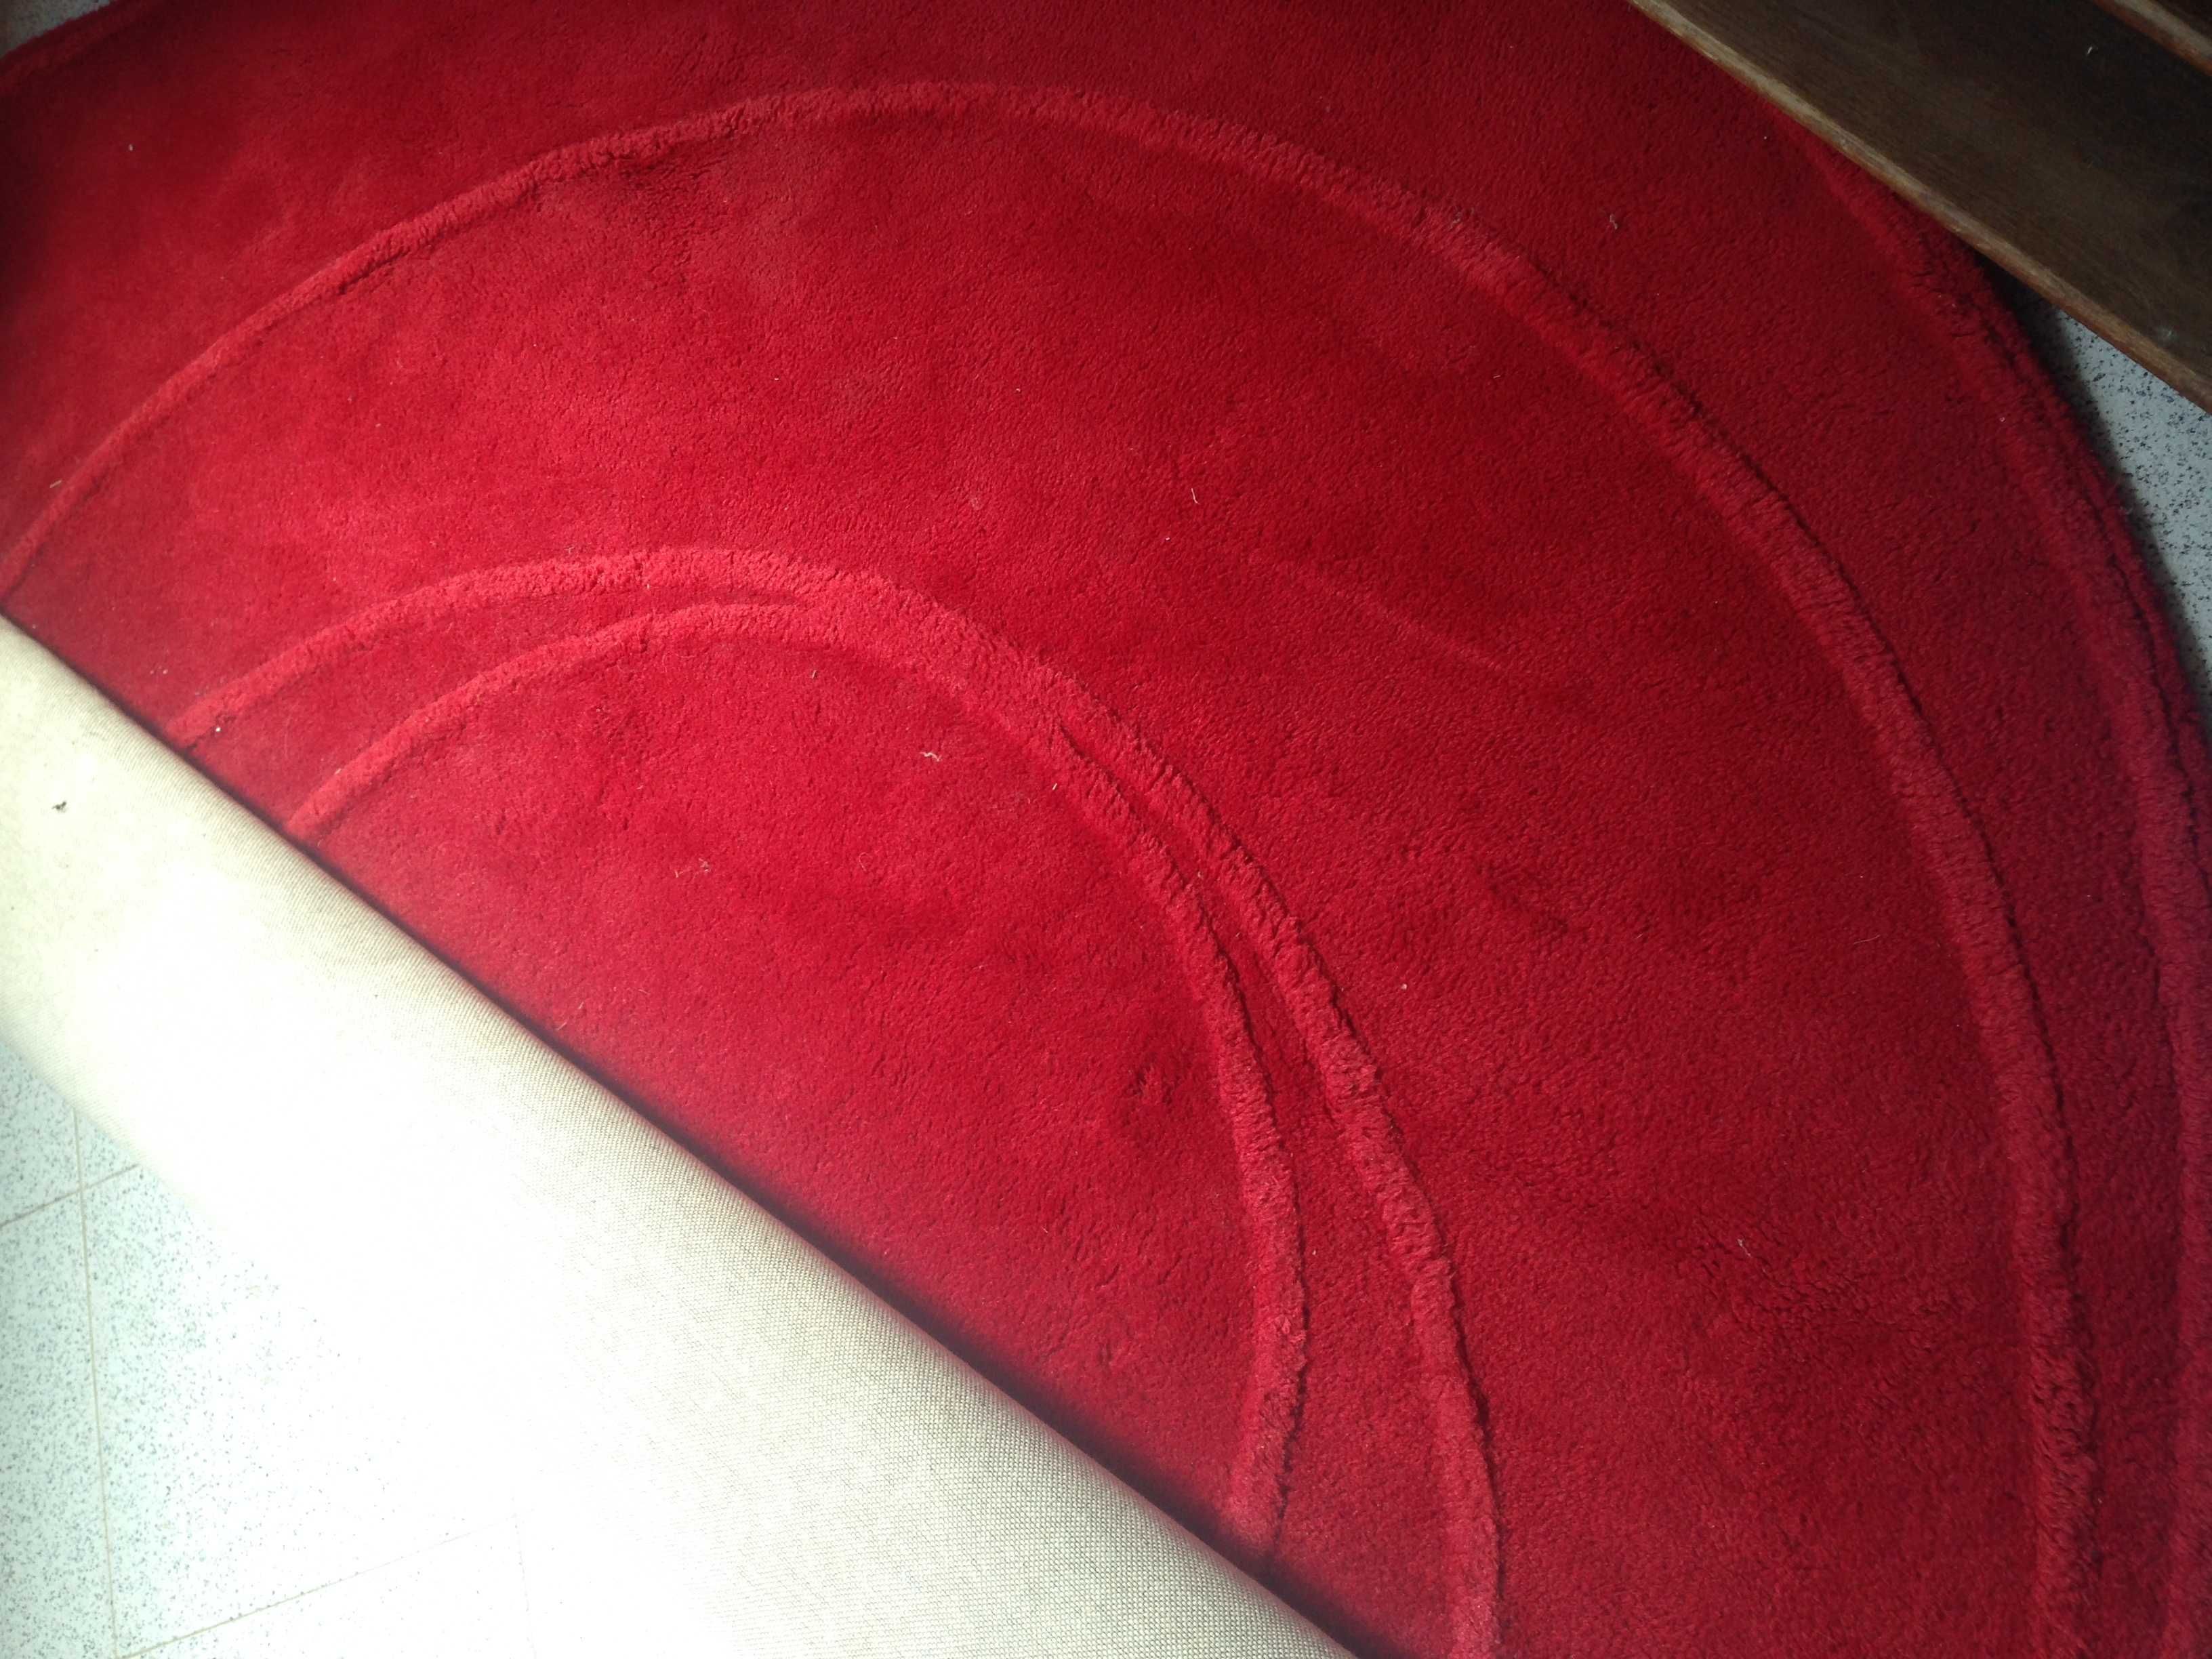 Tapete redondo vermelho 100% lã grandes dimensões